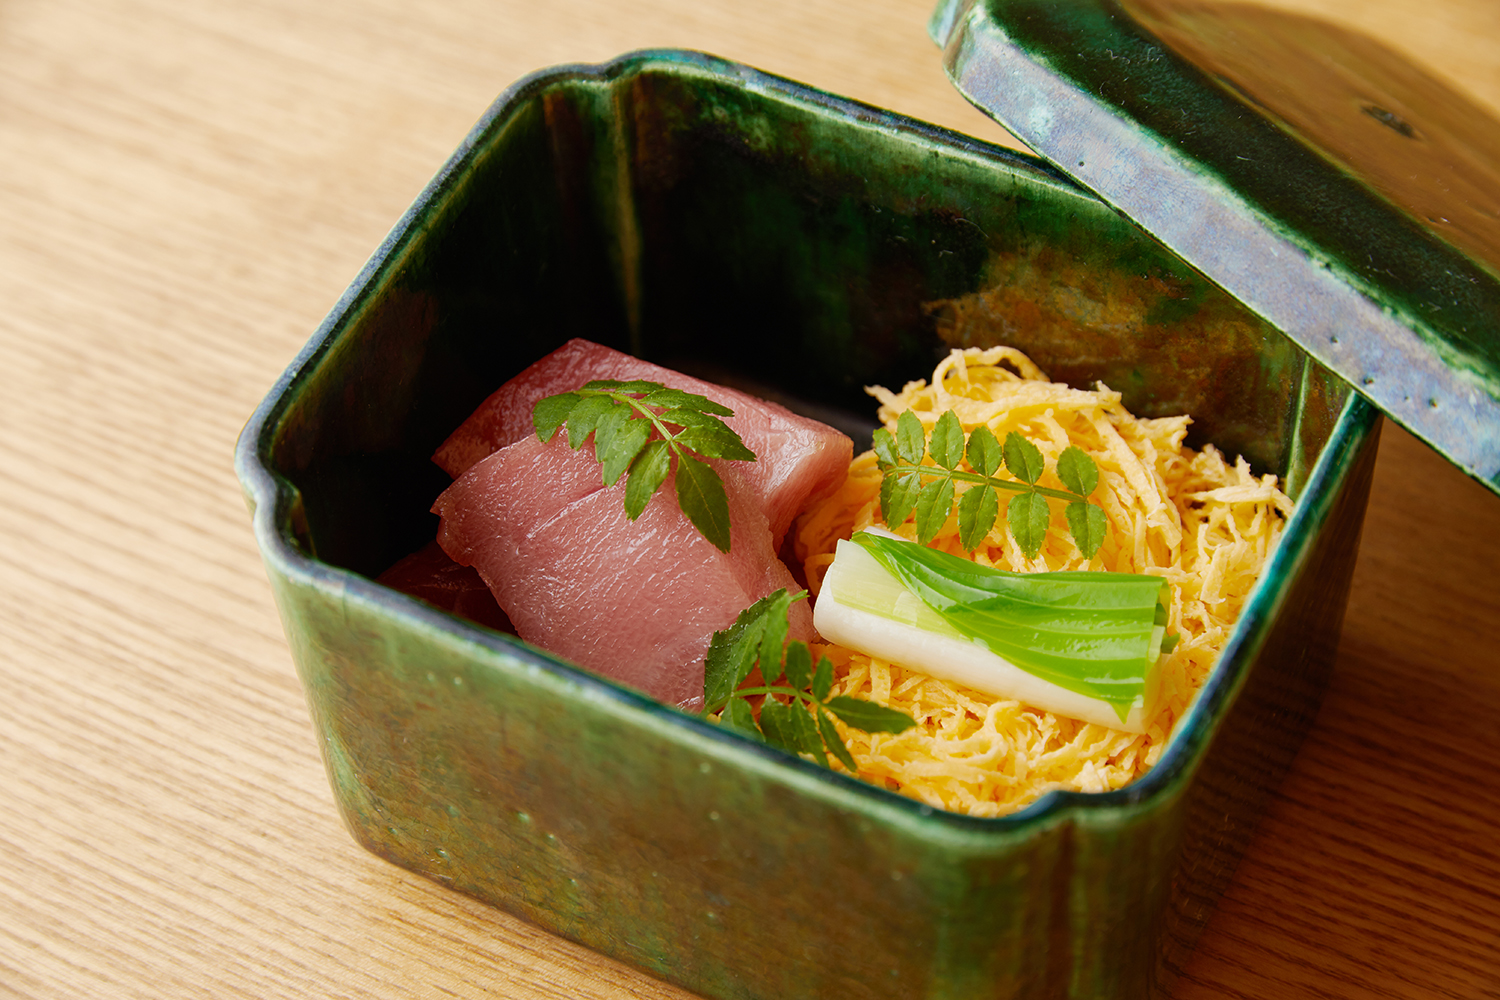 マグロちらし寿司 | 海の恵み 食の底力 JAPAN 公式レシピサイト